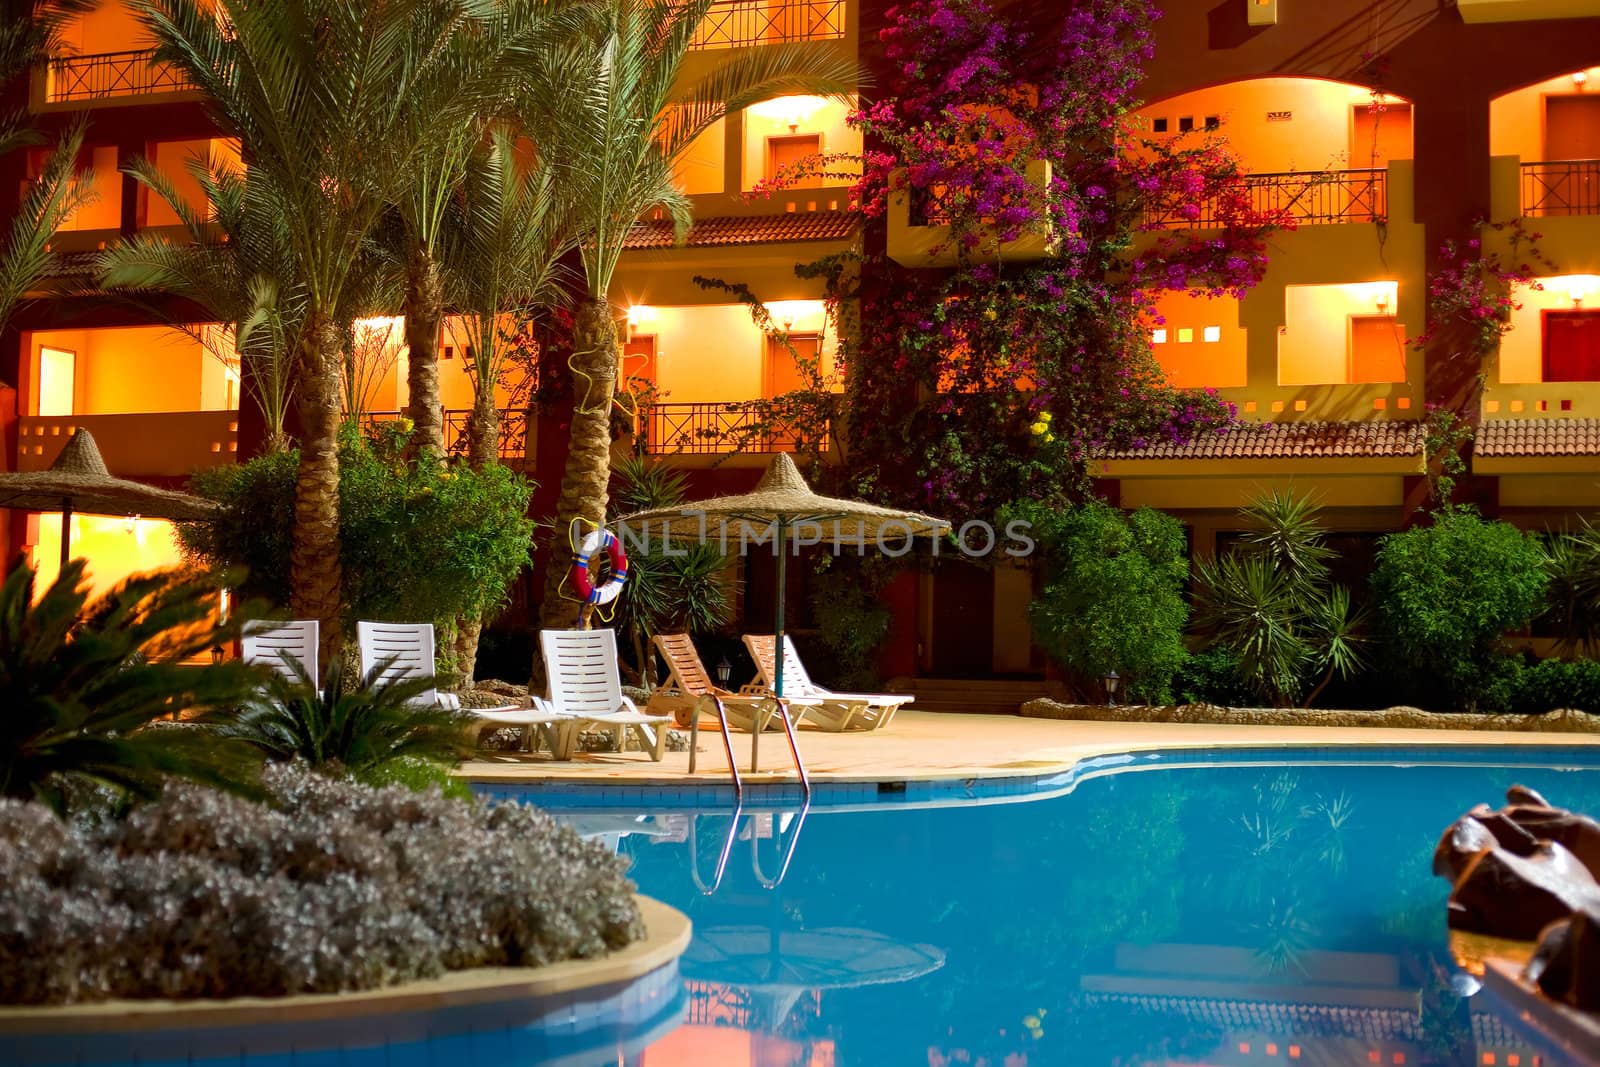 Hotel "Sun & Sea" in Hurgada, Egypt, night shot